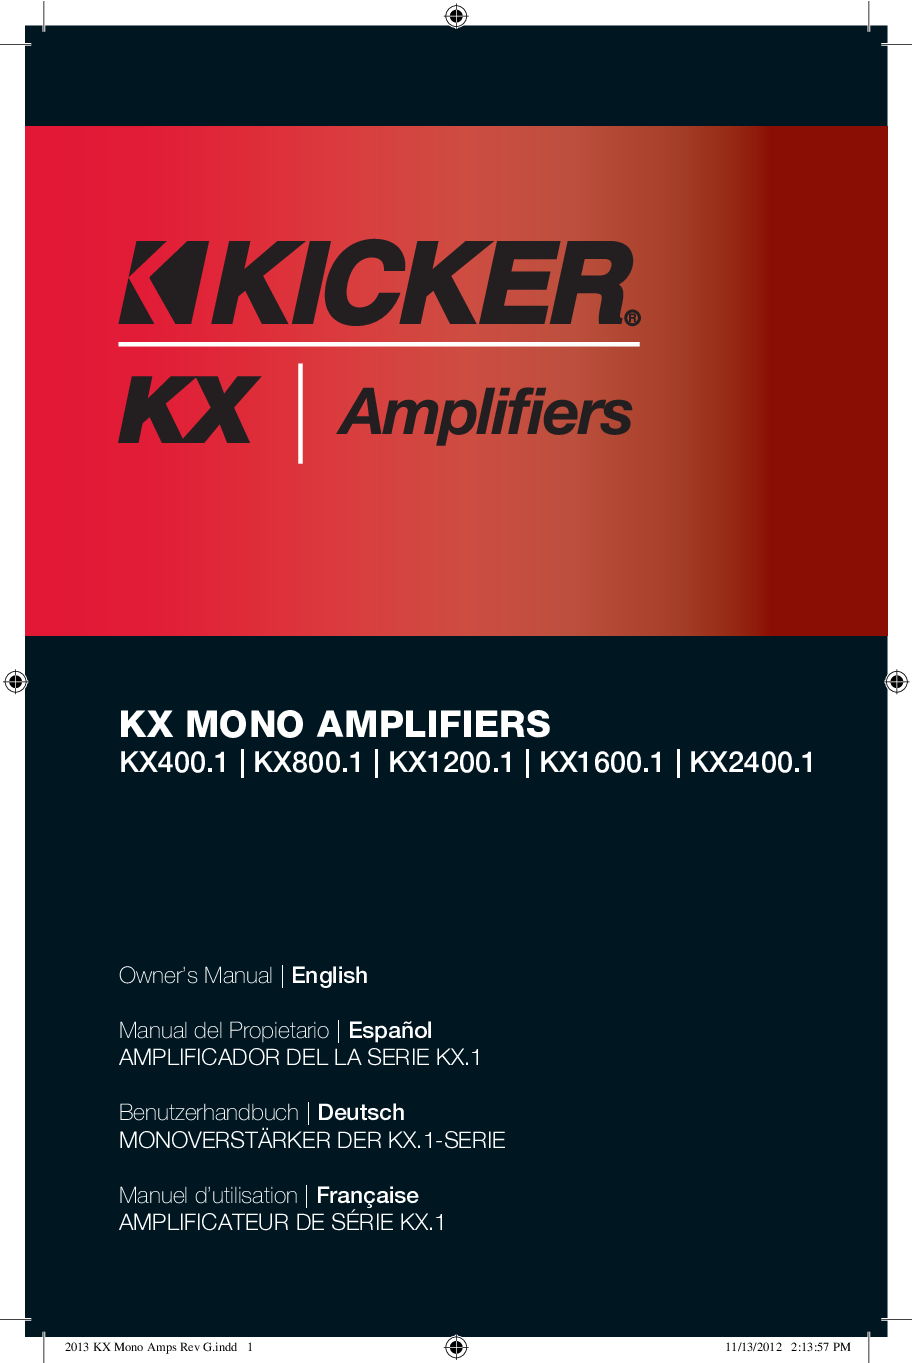 Kicker KX1600.1, KX2400.1, KX1200.1, KX800.1 User Manual